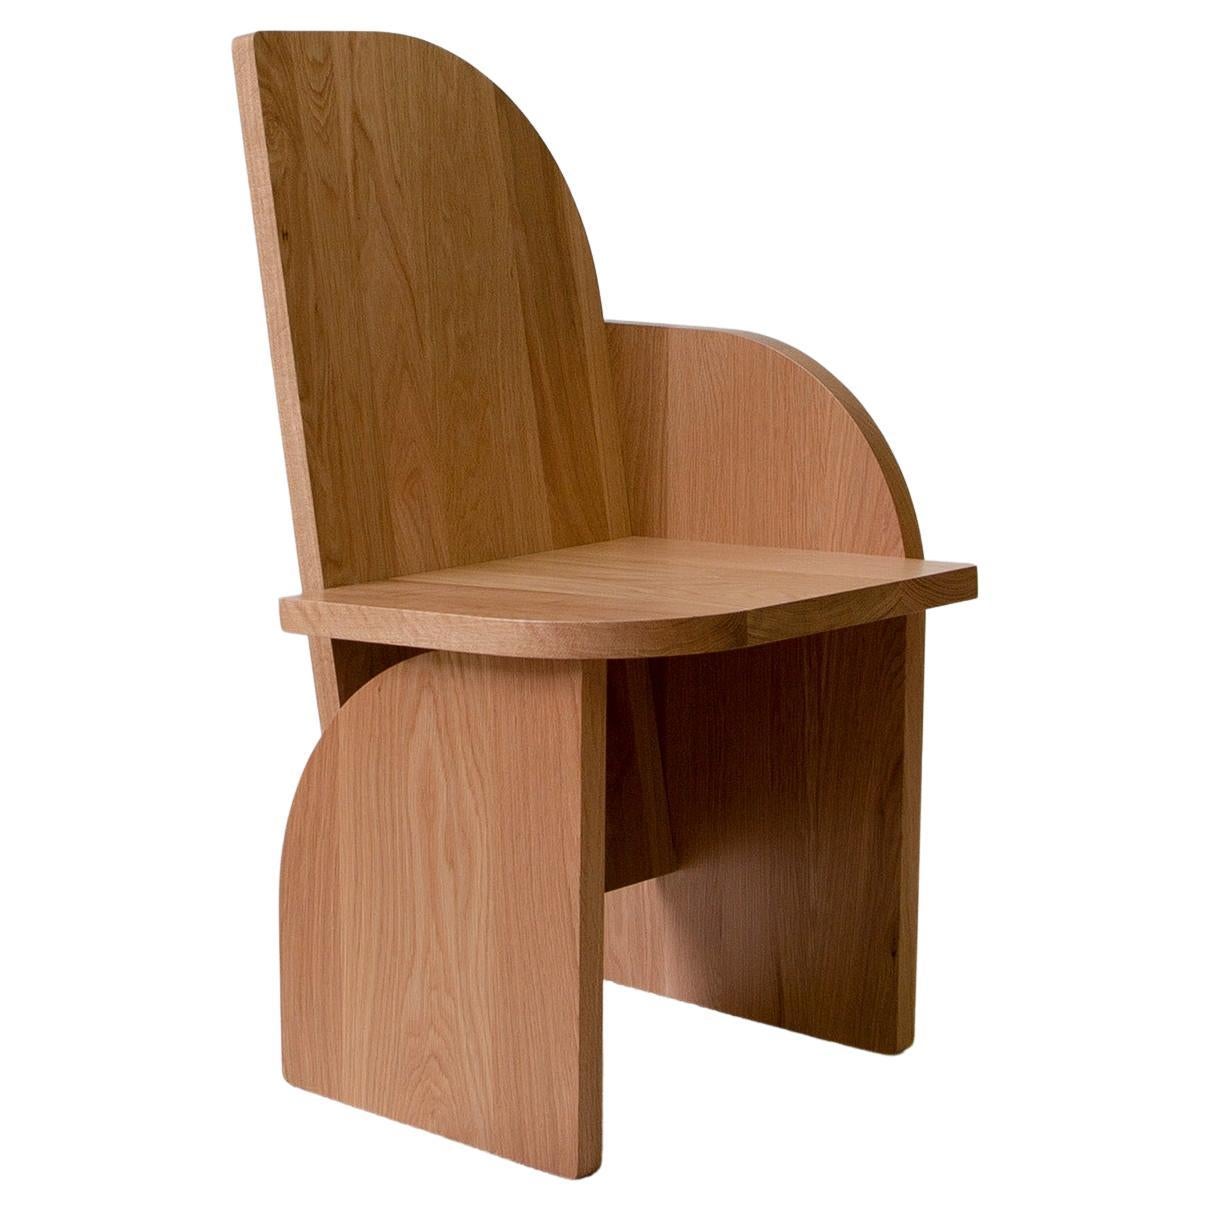 Chaise d'appoint sculpturale en bois massif, chaise d'appoint gauche Bluff, chêne blanc